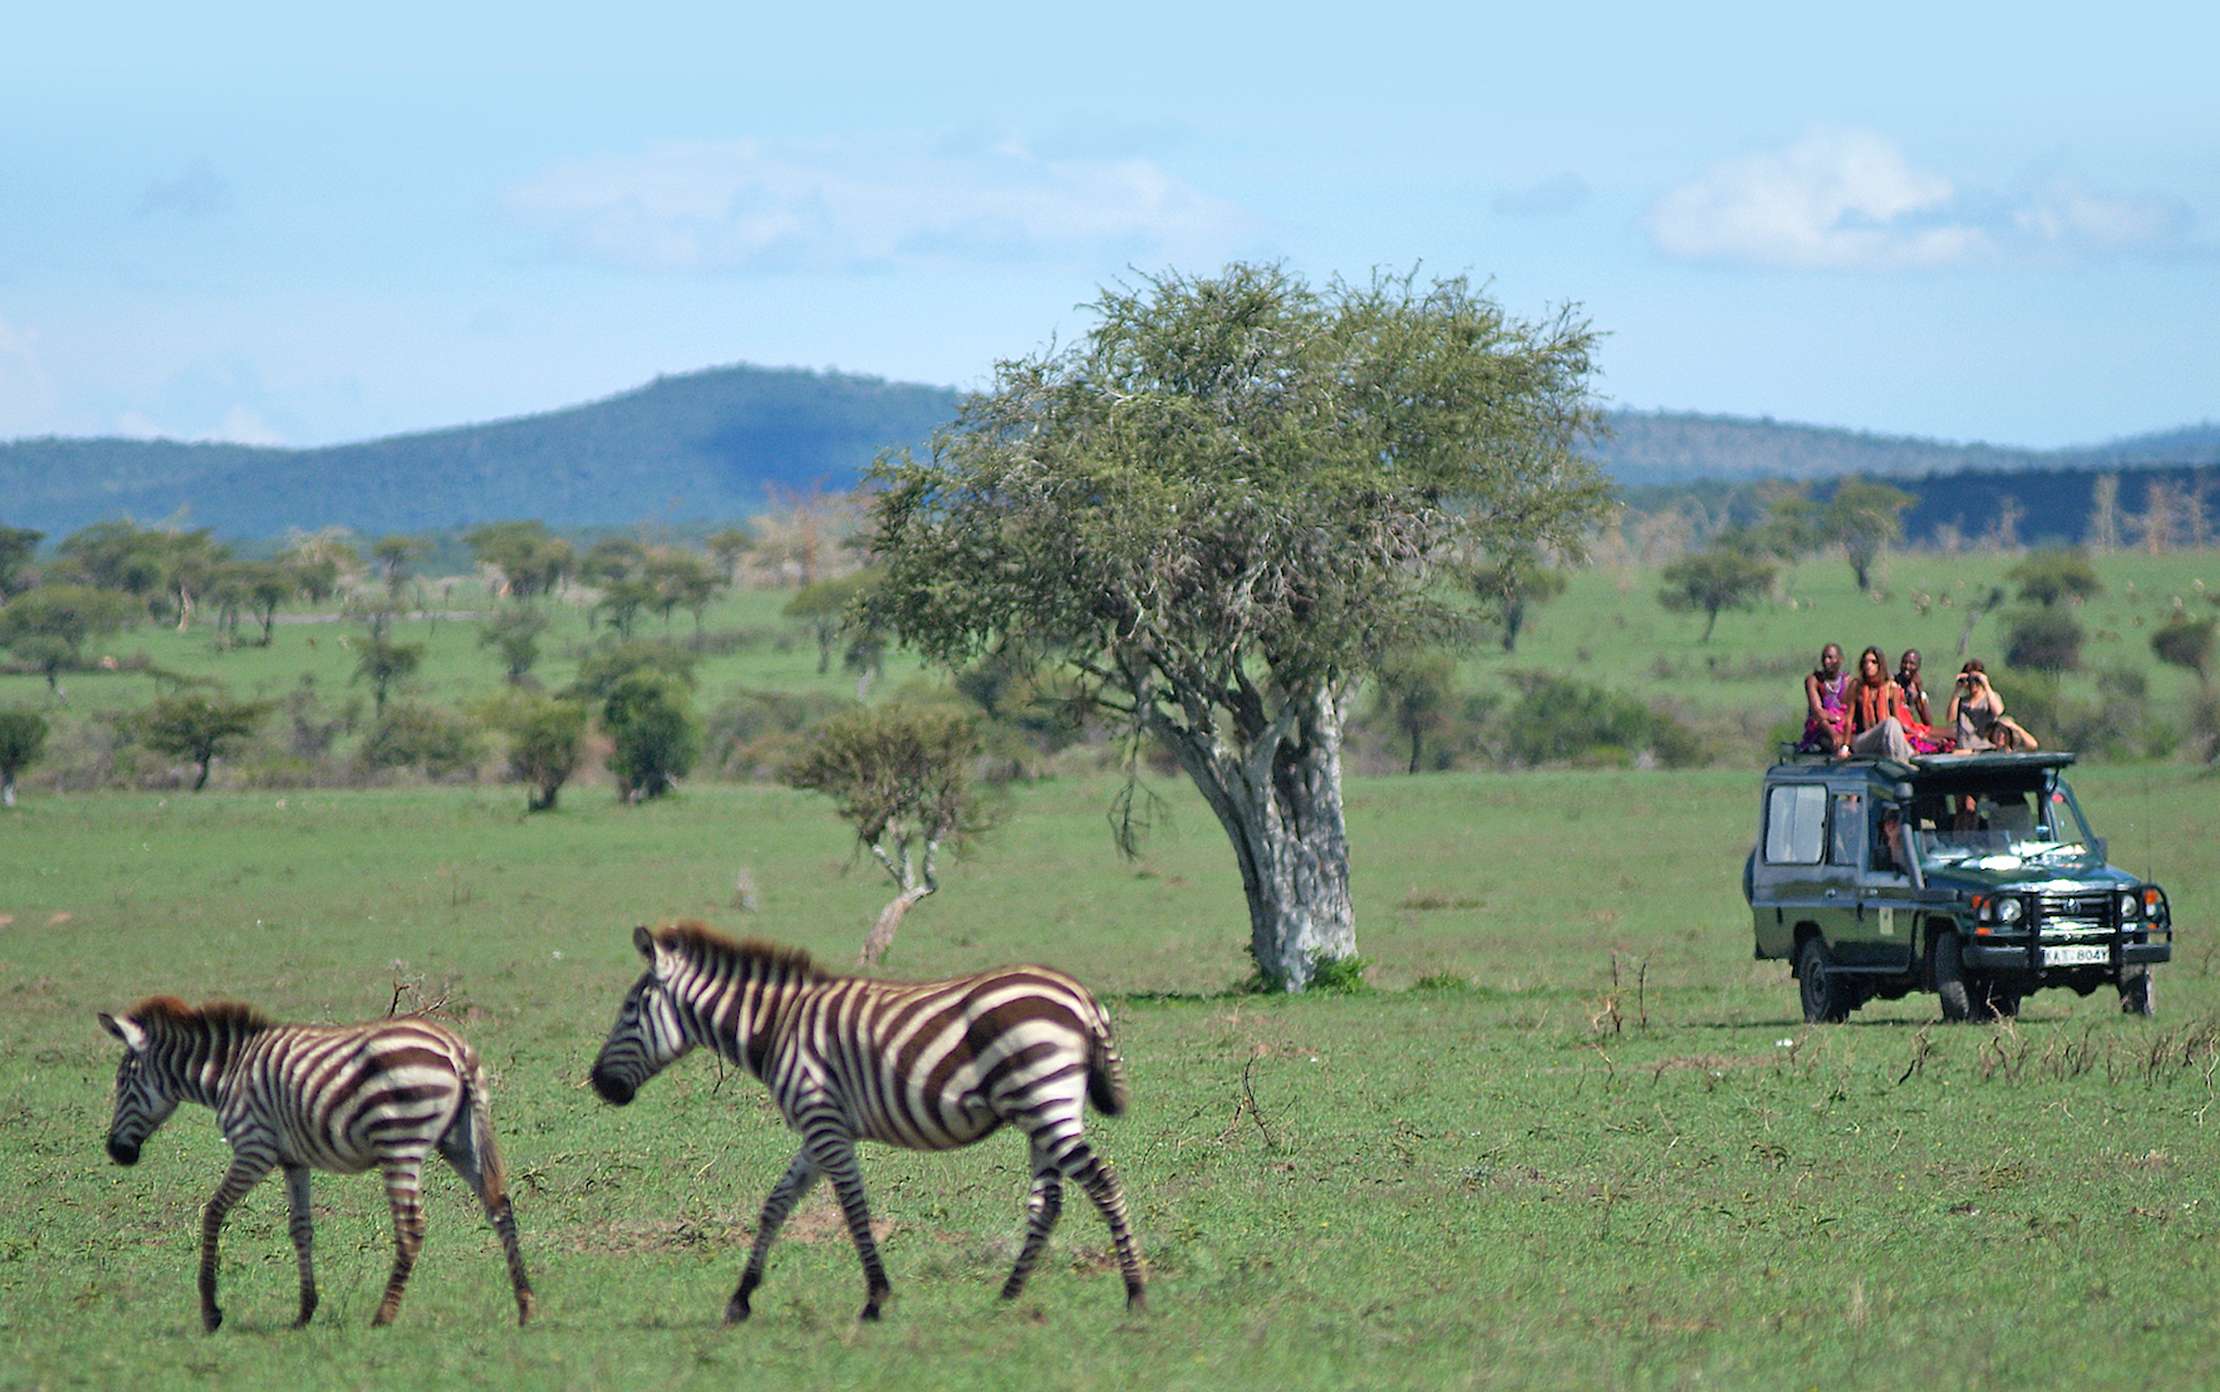 Safari guests view zebras in Kenya's Mara Siana Conservancy